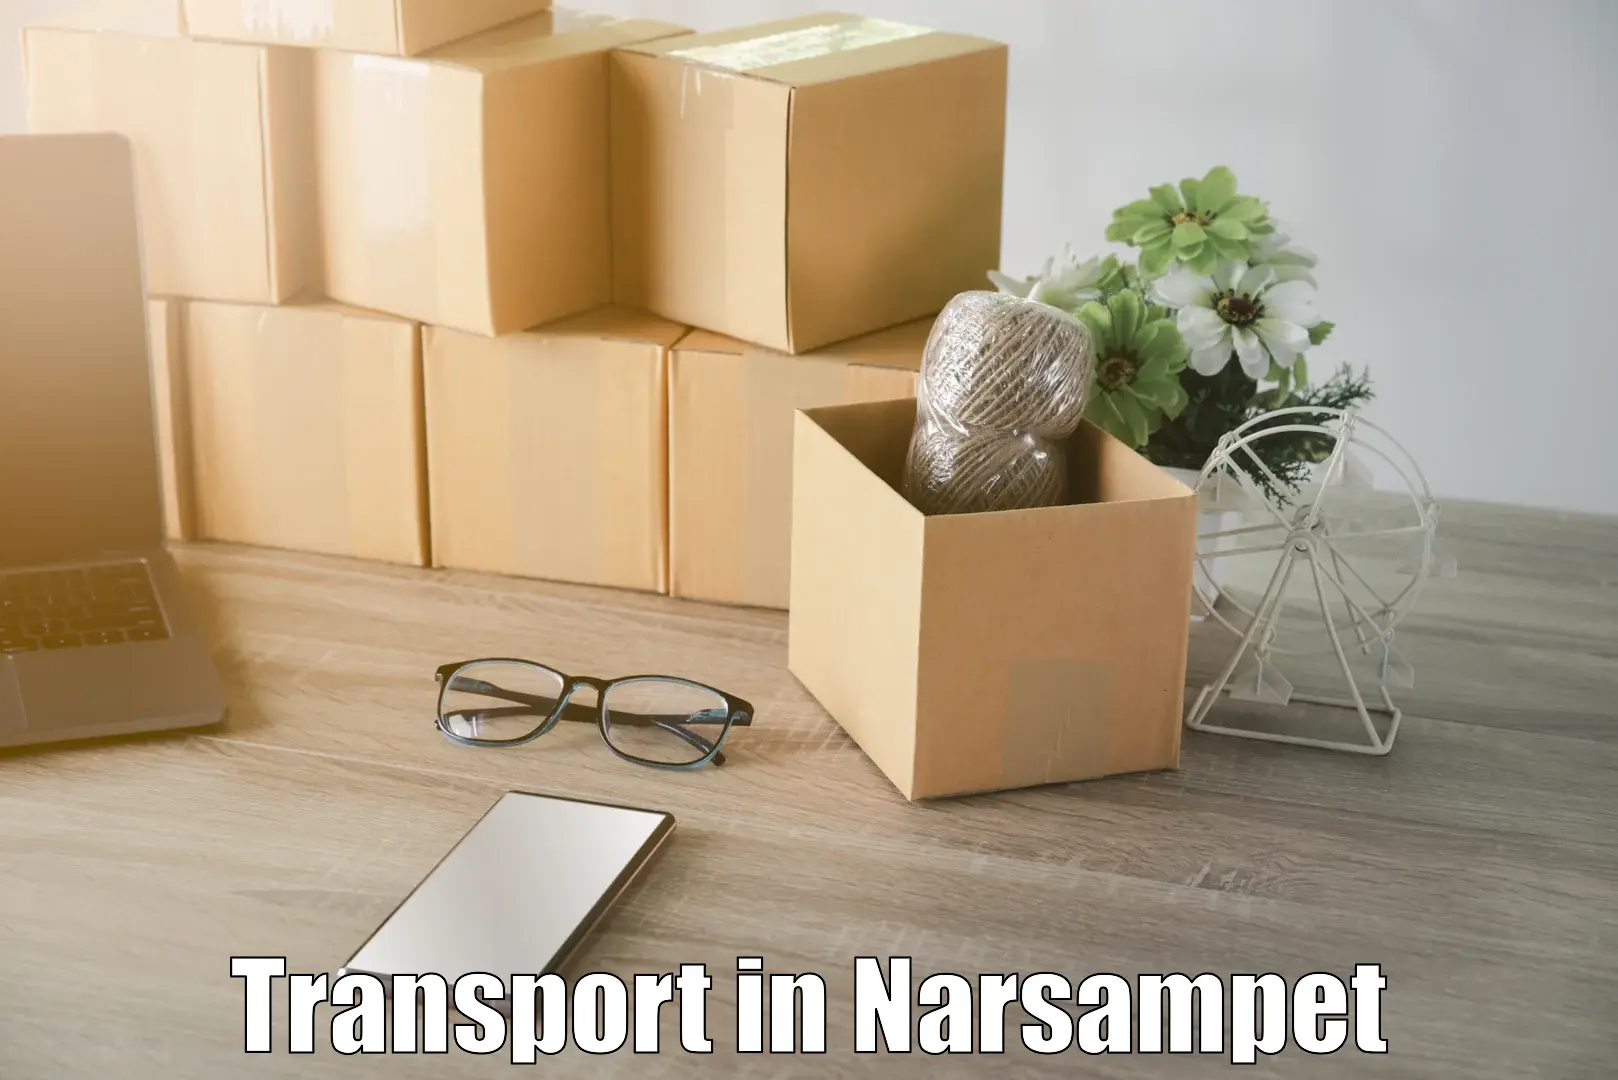 Lorry transport service in Narsampet